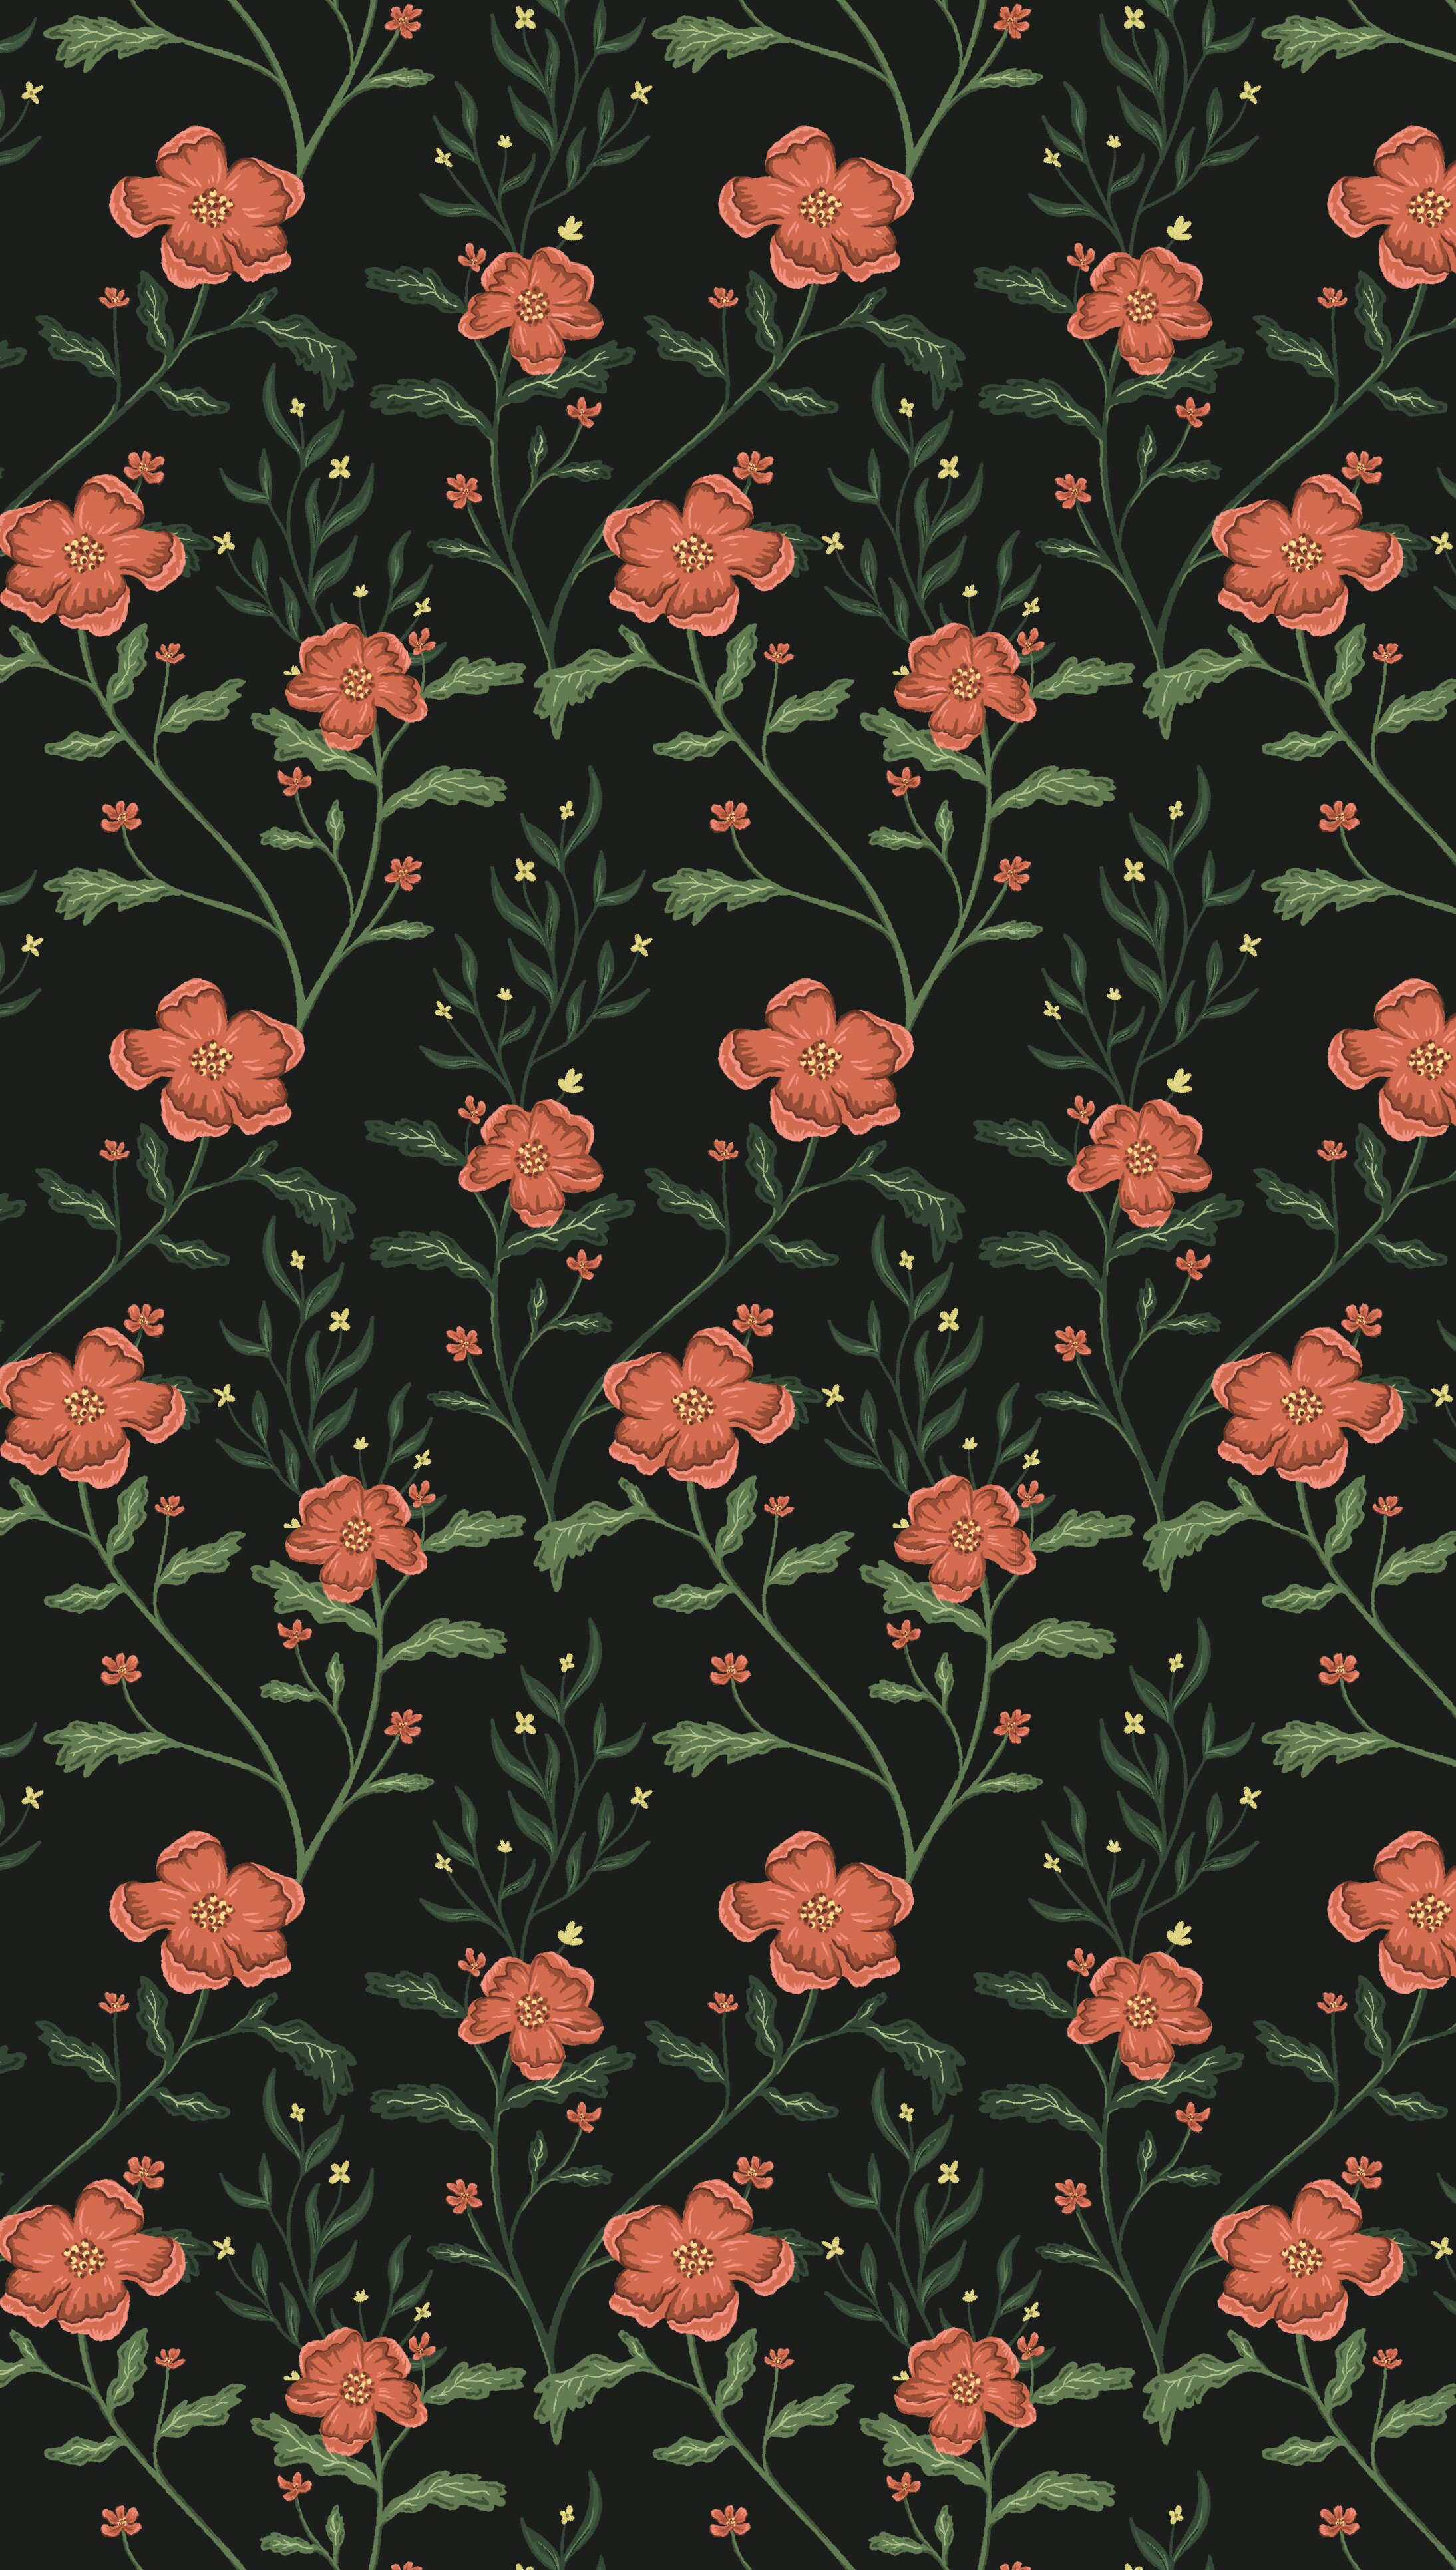 Wildflower Pattern Black.jpg